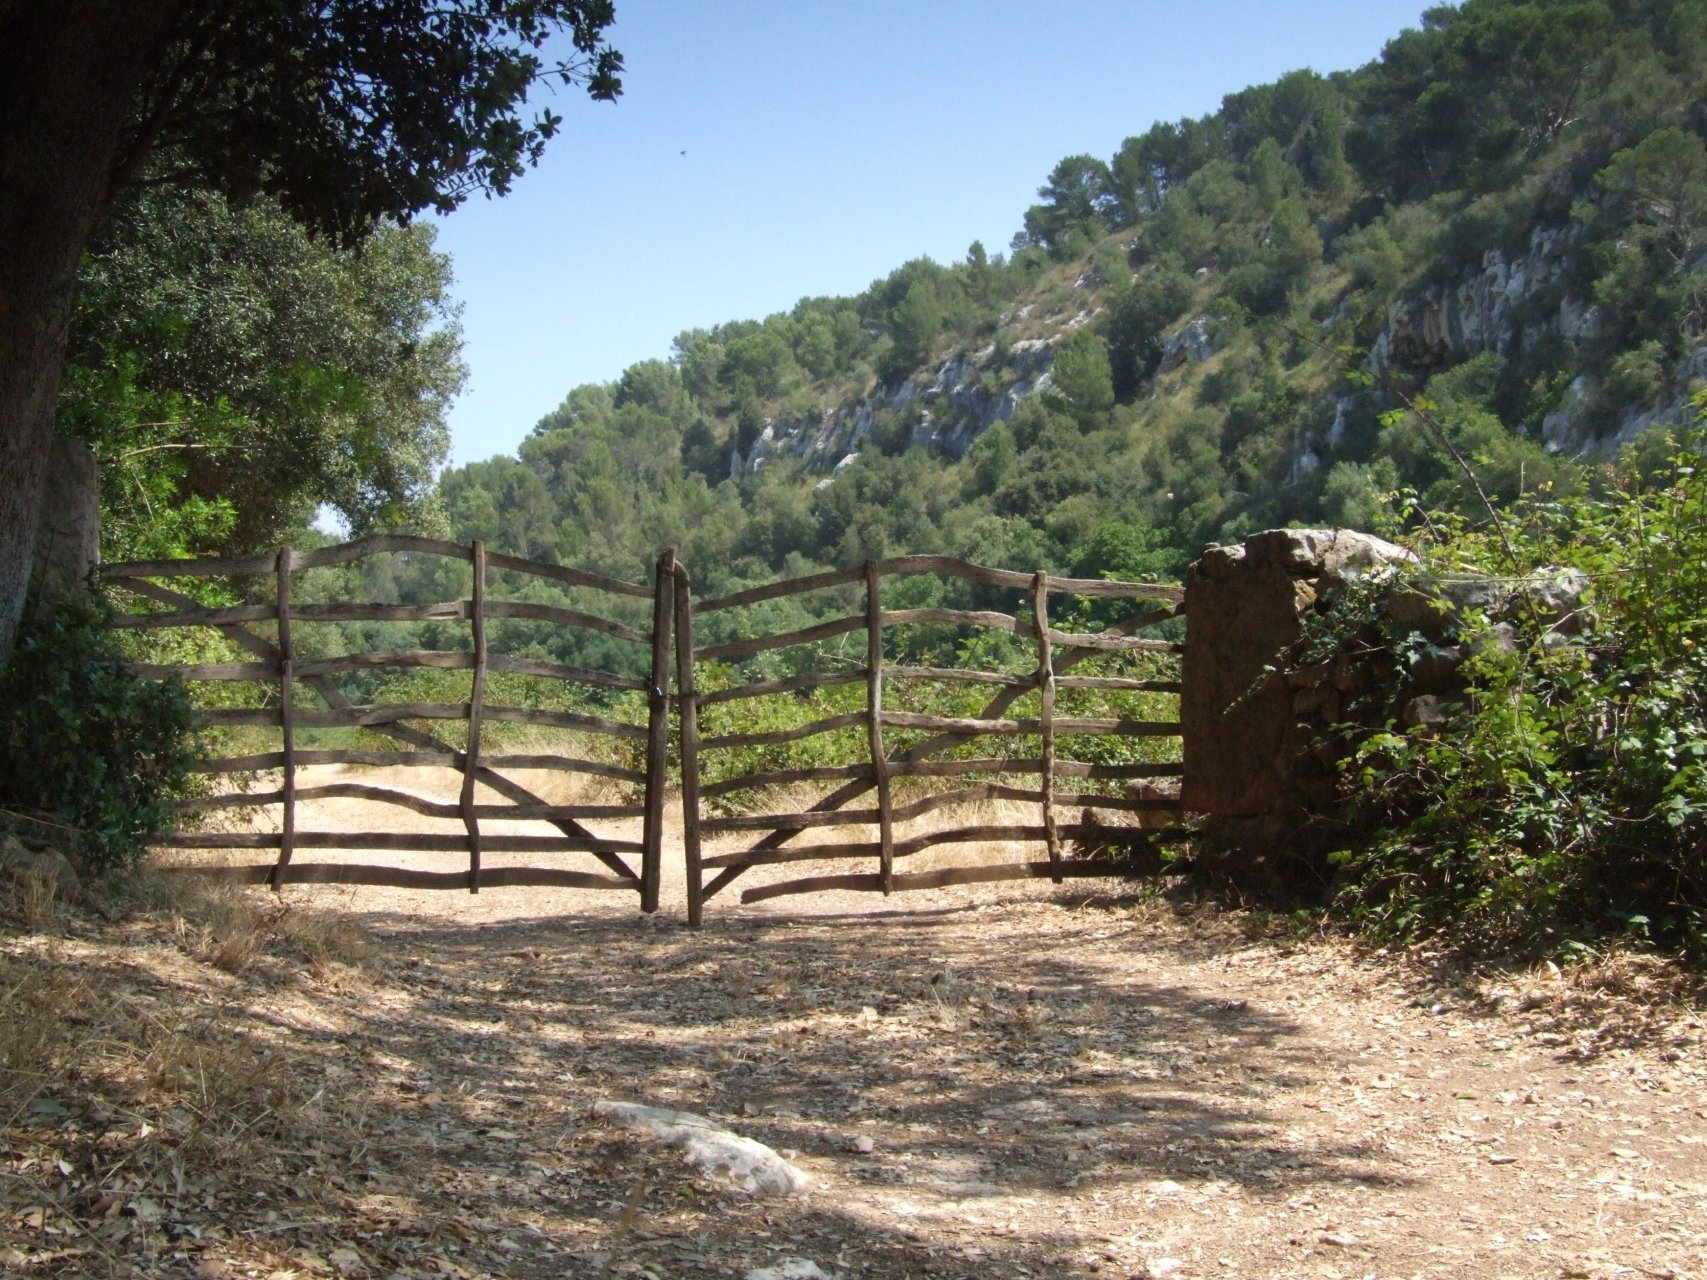 Jedna z wielu bram do sforsowania podczas wędrówki przez Barranc d'Algendar